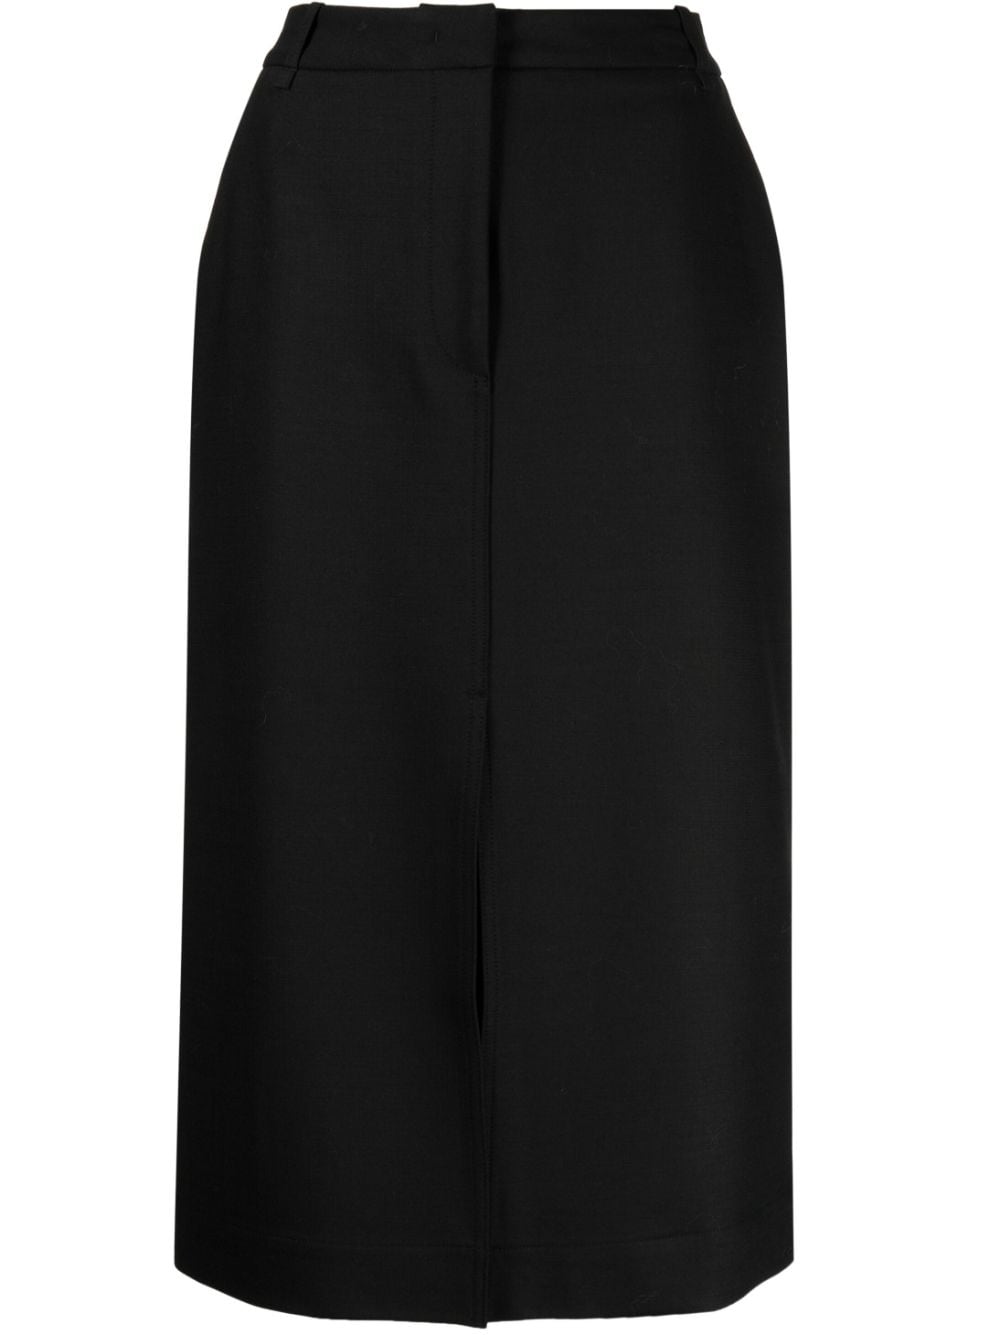 Fabiana Filippi high-waisted pencil skirt - Black von Fabiana Filippi